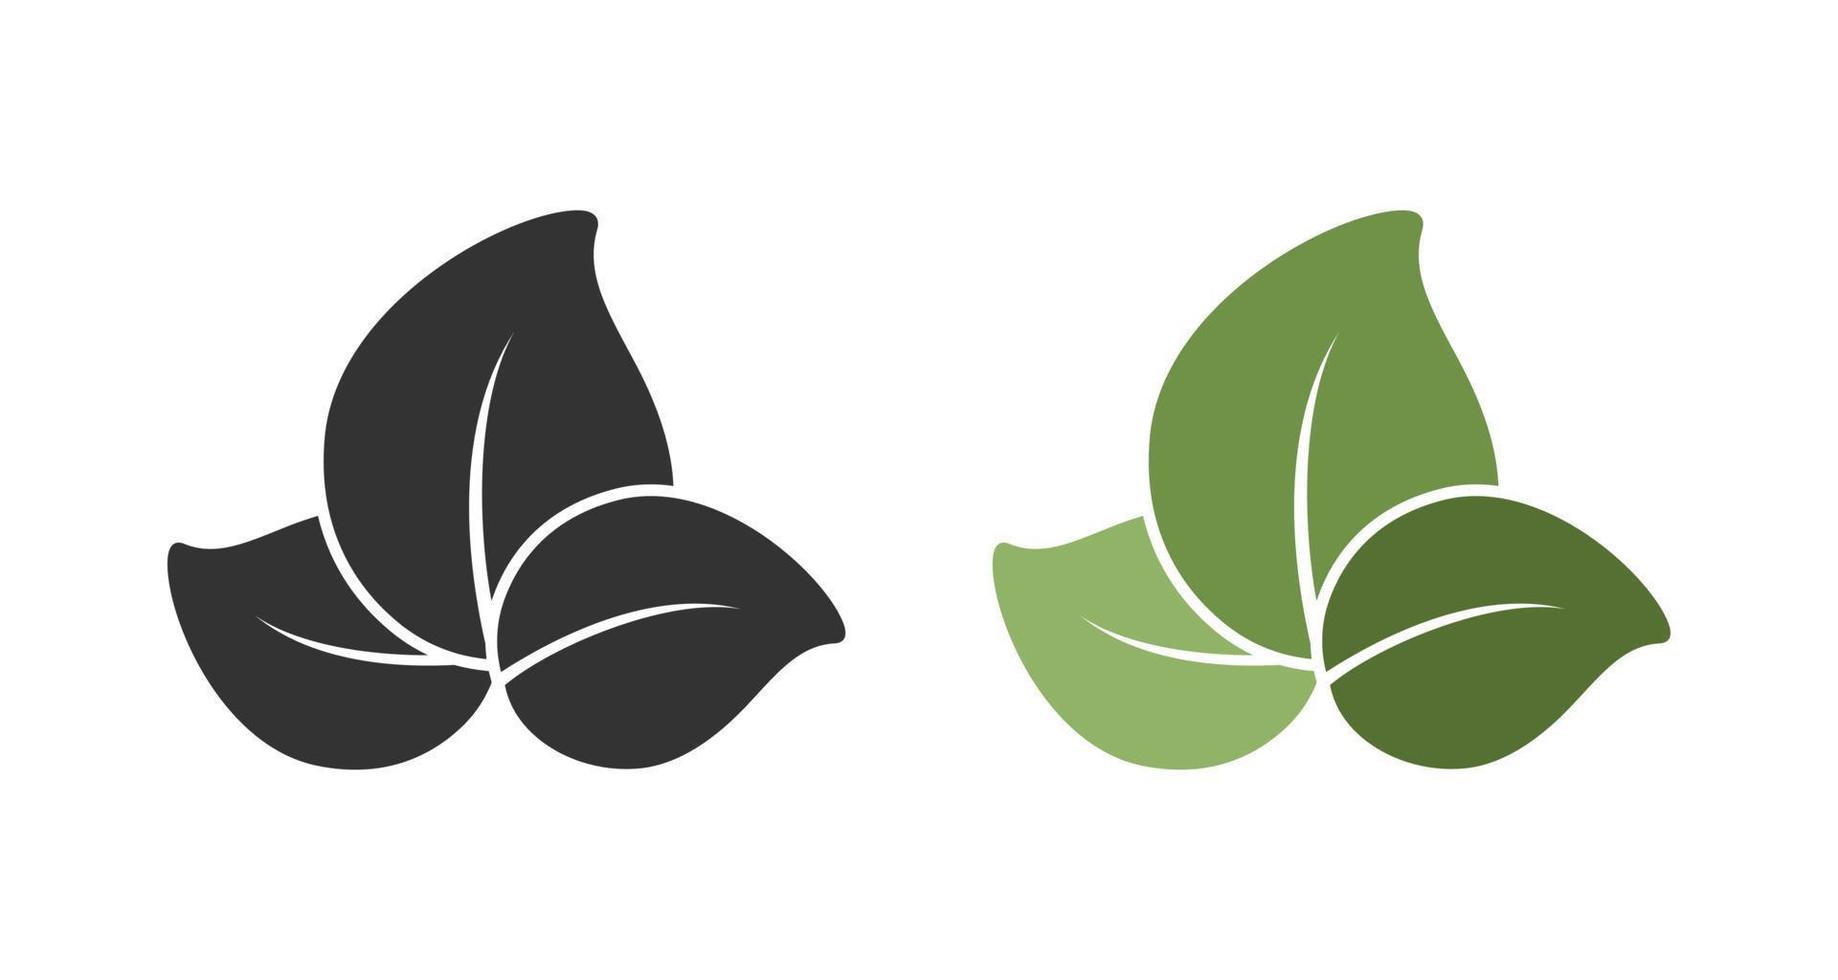 trois feuilles logo de l'entreprise icône web clip art. conception graphique vectorielle simple et moderne minimale. symbole de signe ou badge pour la nature, produits écologiques biologiques, végétarien imprimé d'autocollants, etc. vecteur